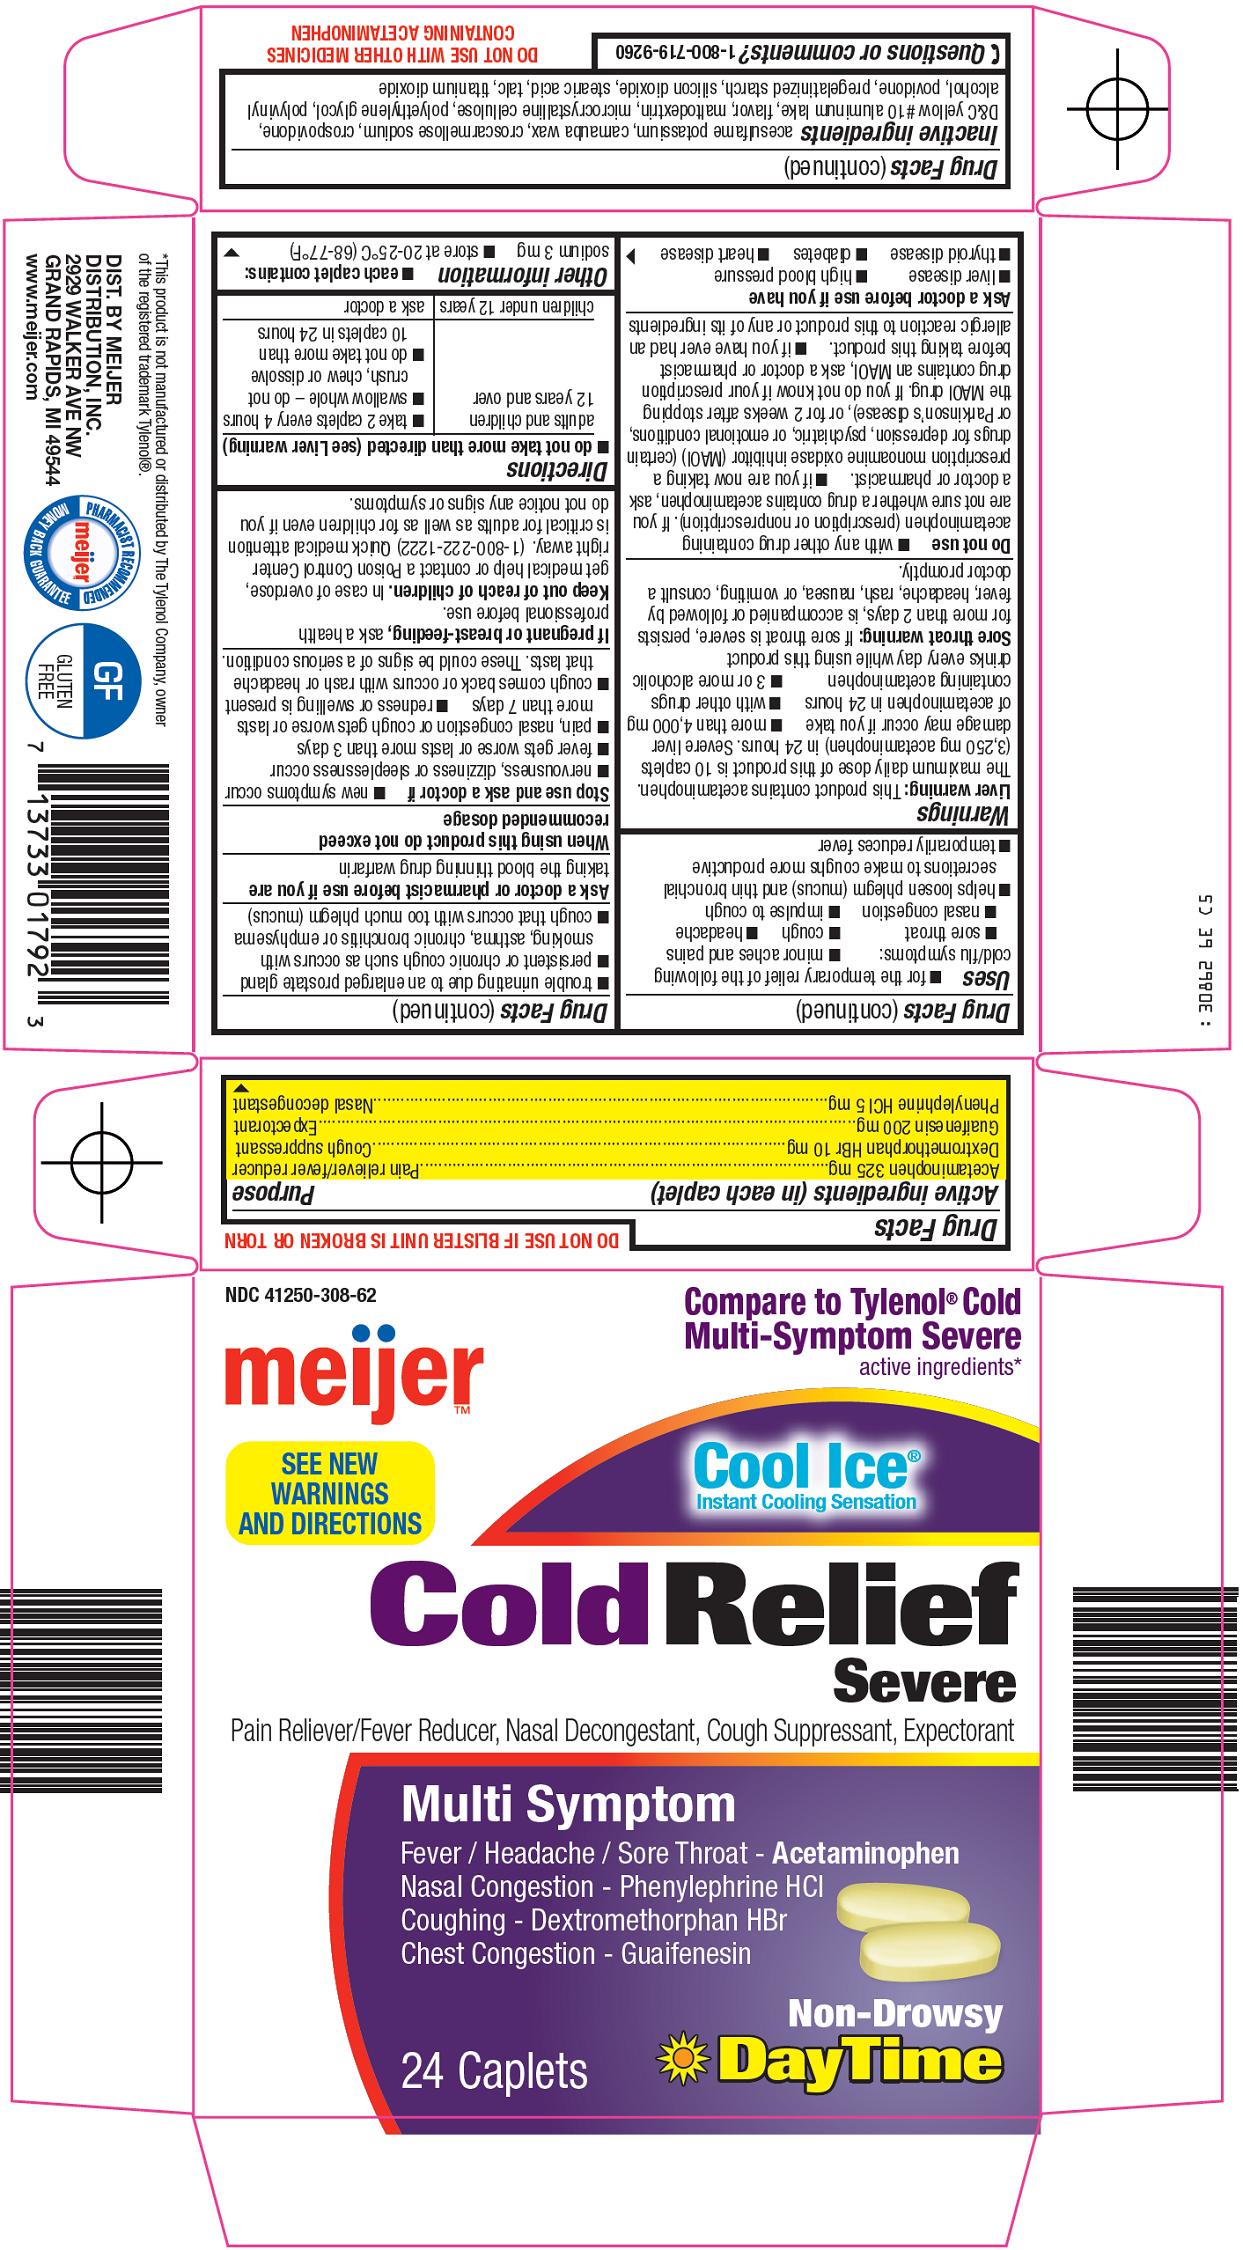 Cold Relief Carton Image